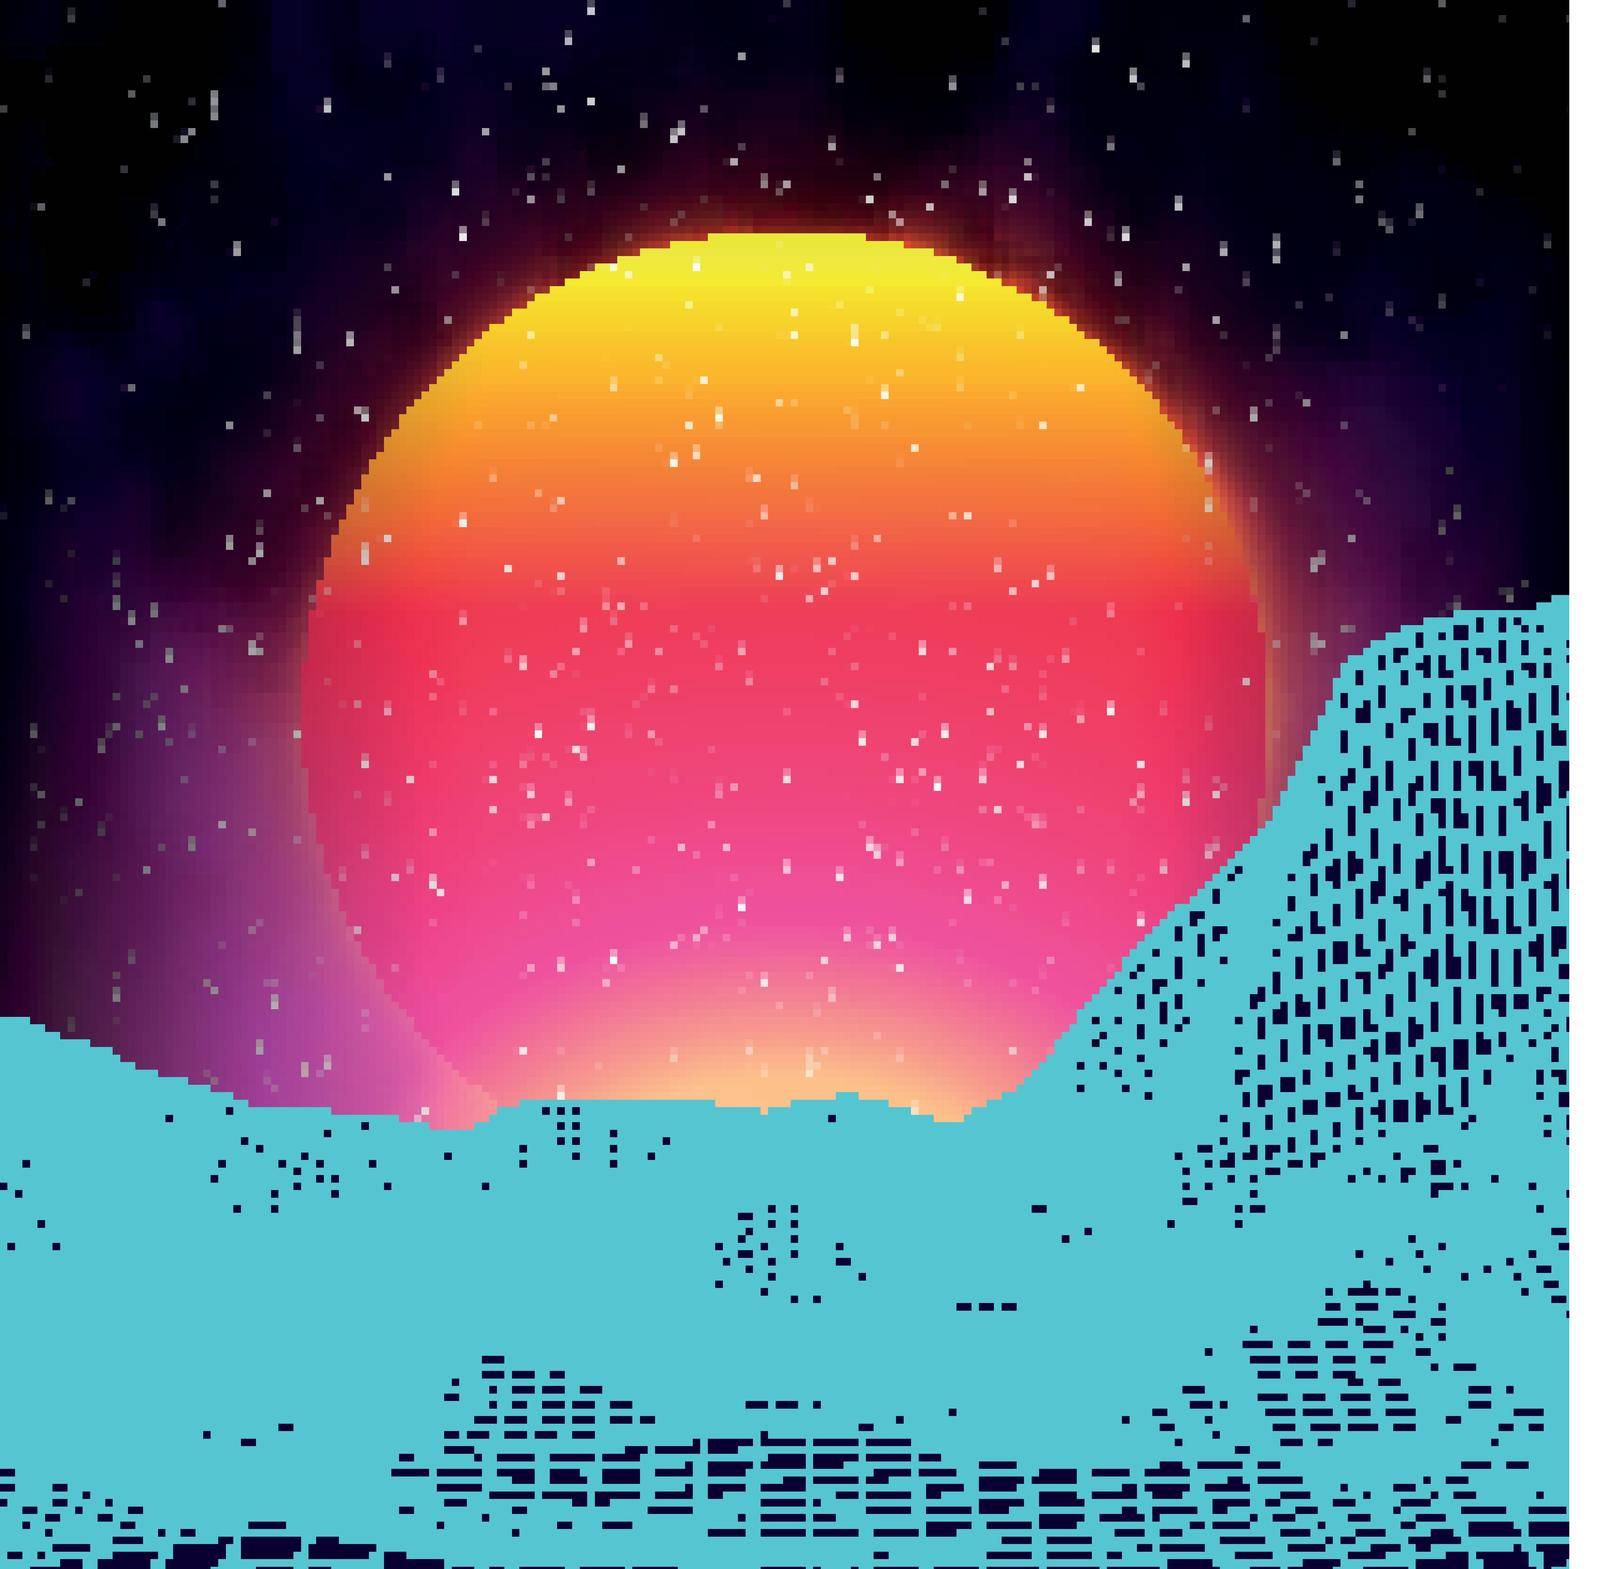 Retro background futuristic landscape 1980s style. Digital retro landscape cyber surface. Retro music album cover template sun, space, mountains . 80s Retro Sci-Fi Background Summer .